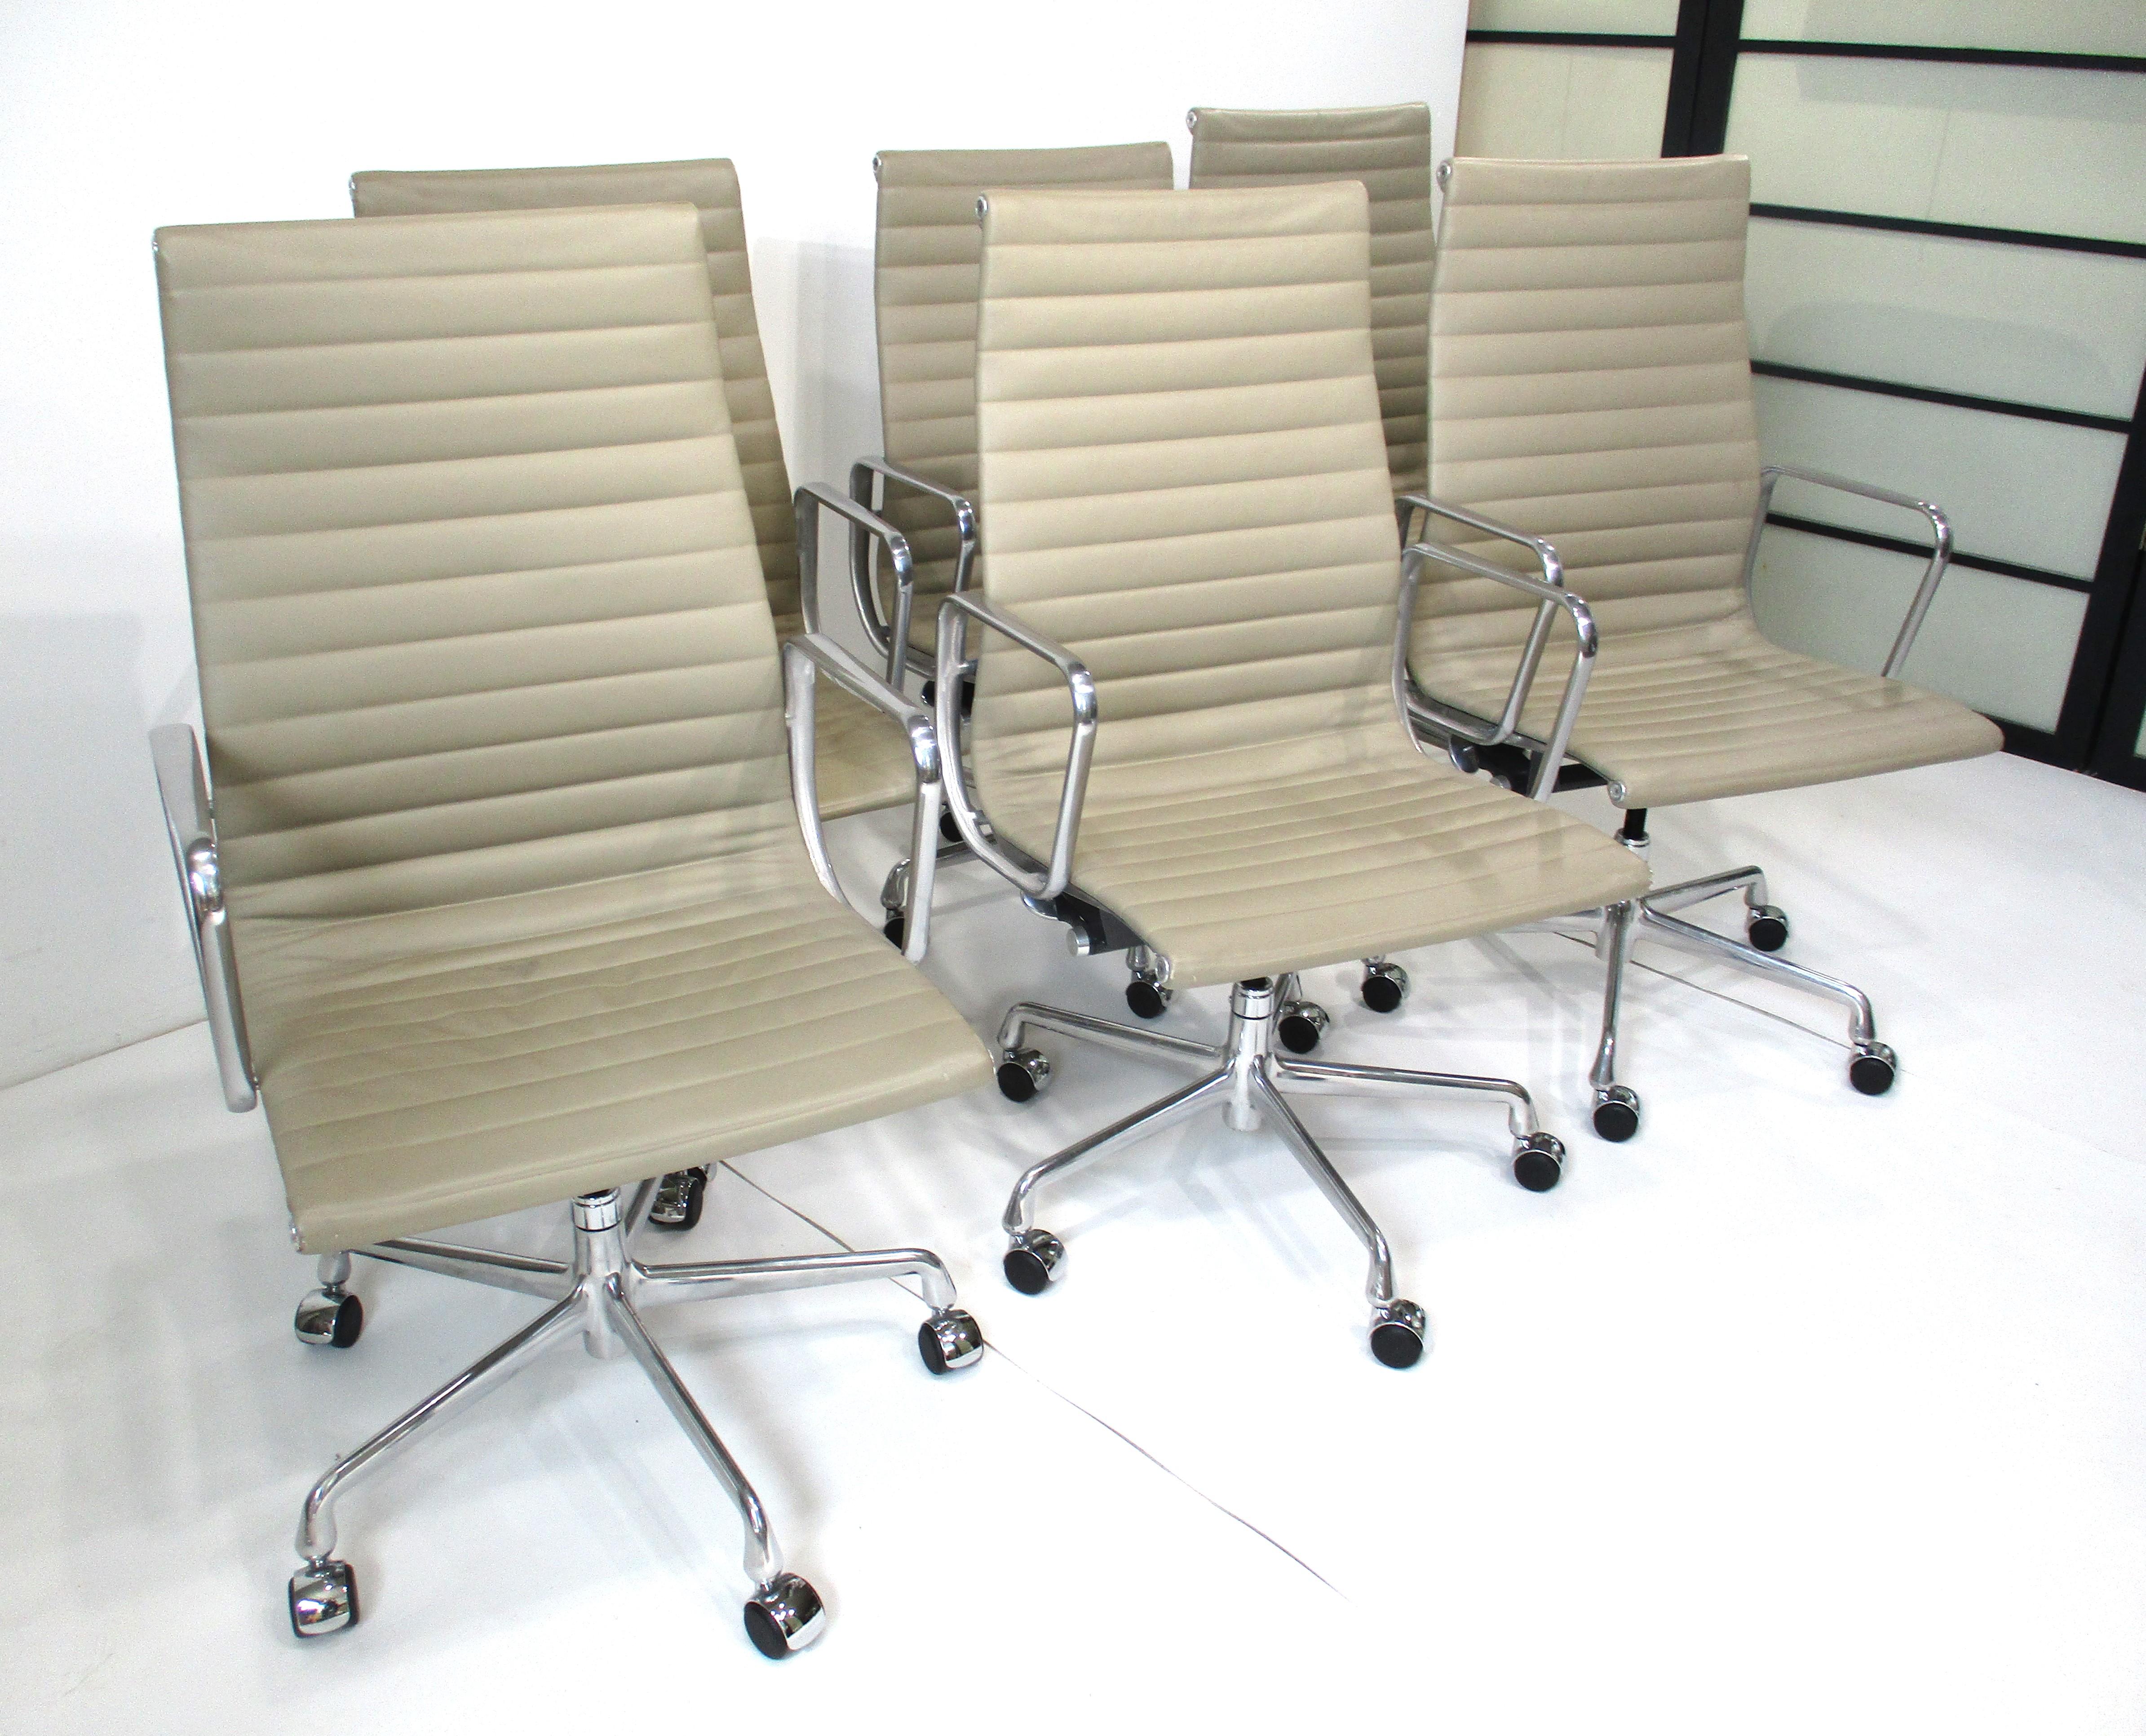 Un ensemble de six fauteuils de groupe en aluminium à dossier haut et à roulettes, édition du 50e anniversaire 1958 - 2008 . Tapissé d'un cuir souple et doux de couleur taupe, uniquement pour cette édition, avec des bases étoilées en aluminium poli.